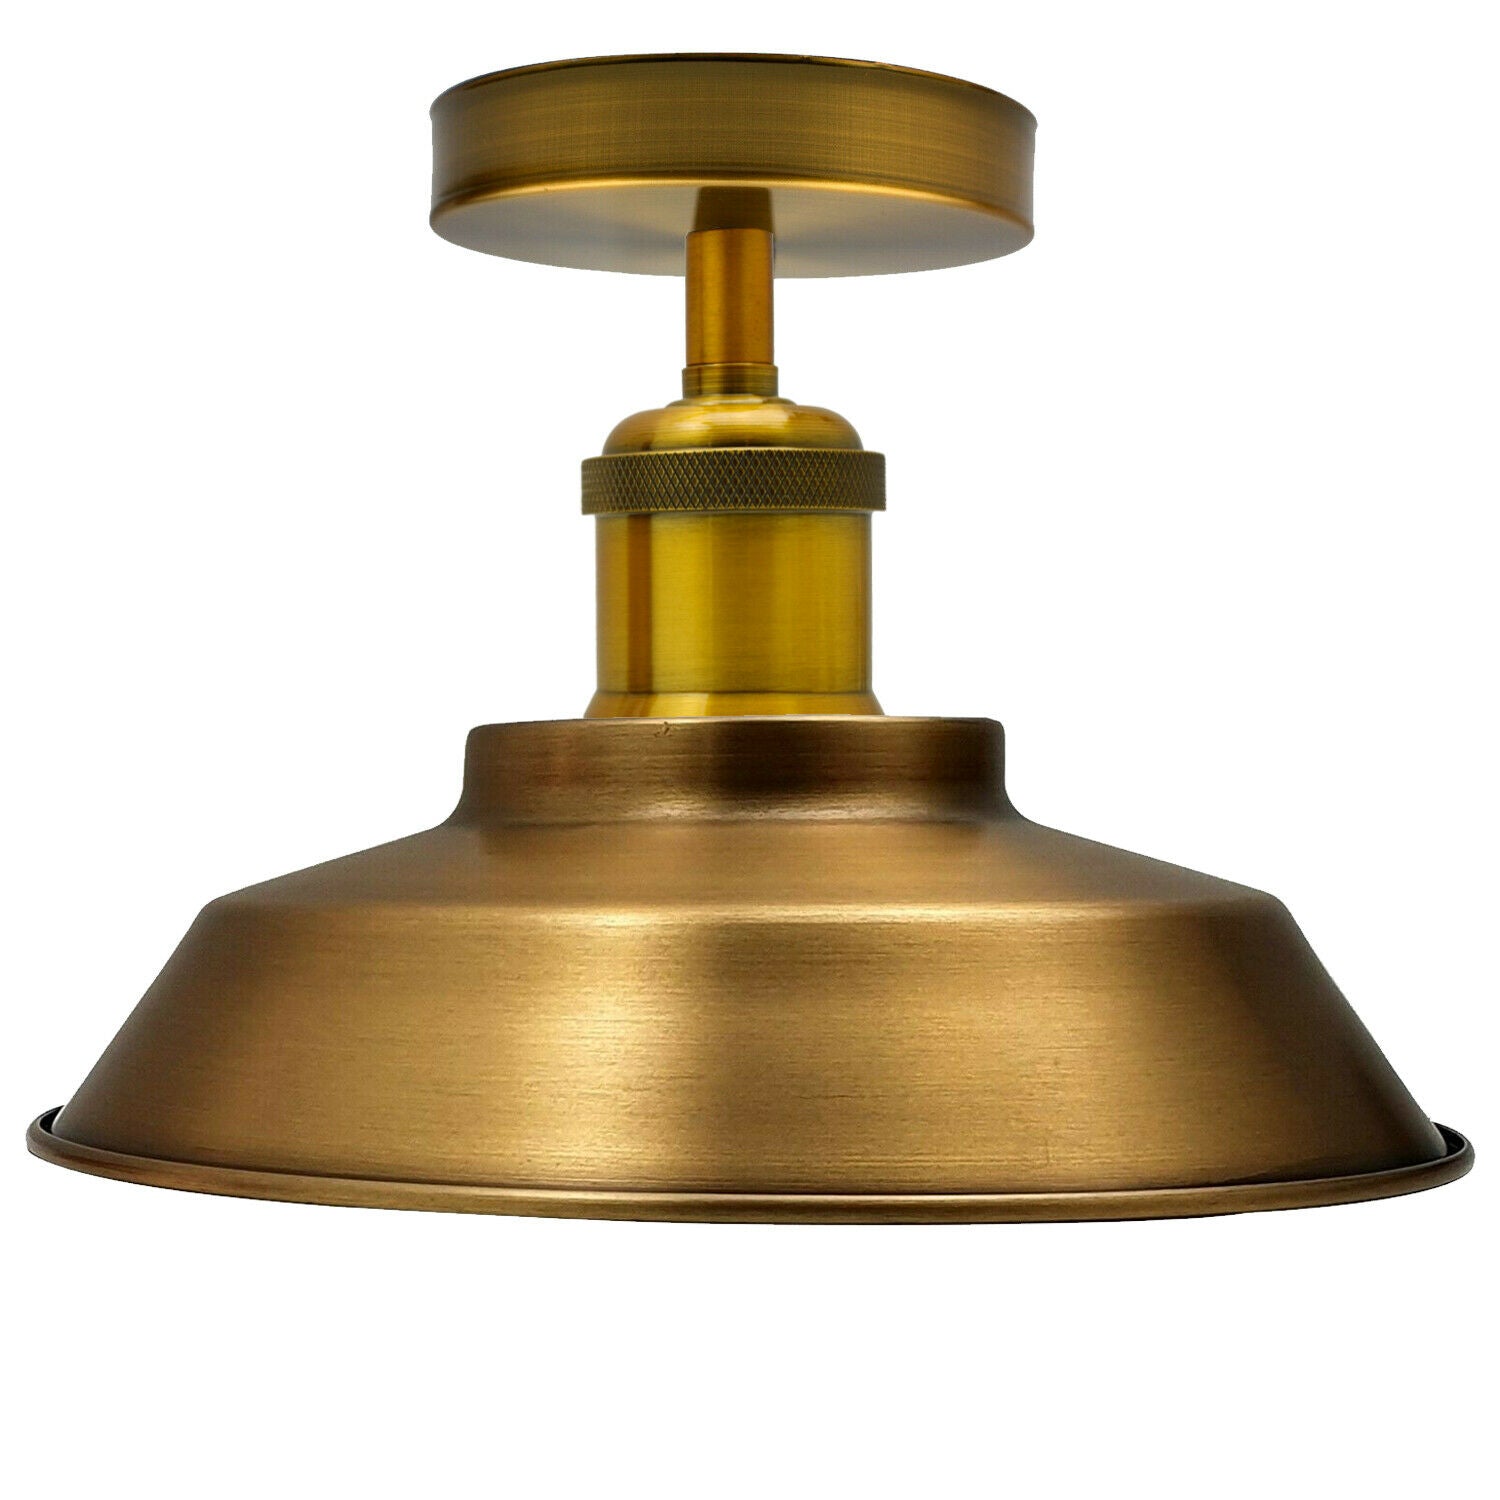 Ceiling Light Retro Flush Mount Ceiling Lamp Shade Fitting Yellow Brass~1929 - LEDSone UK Ltd